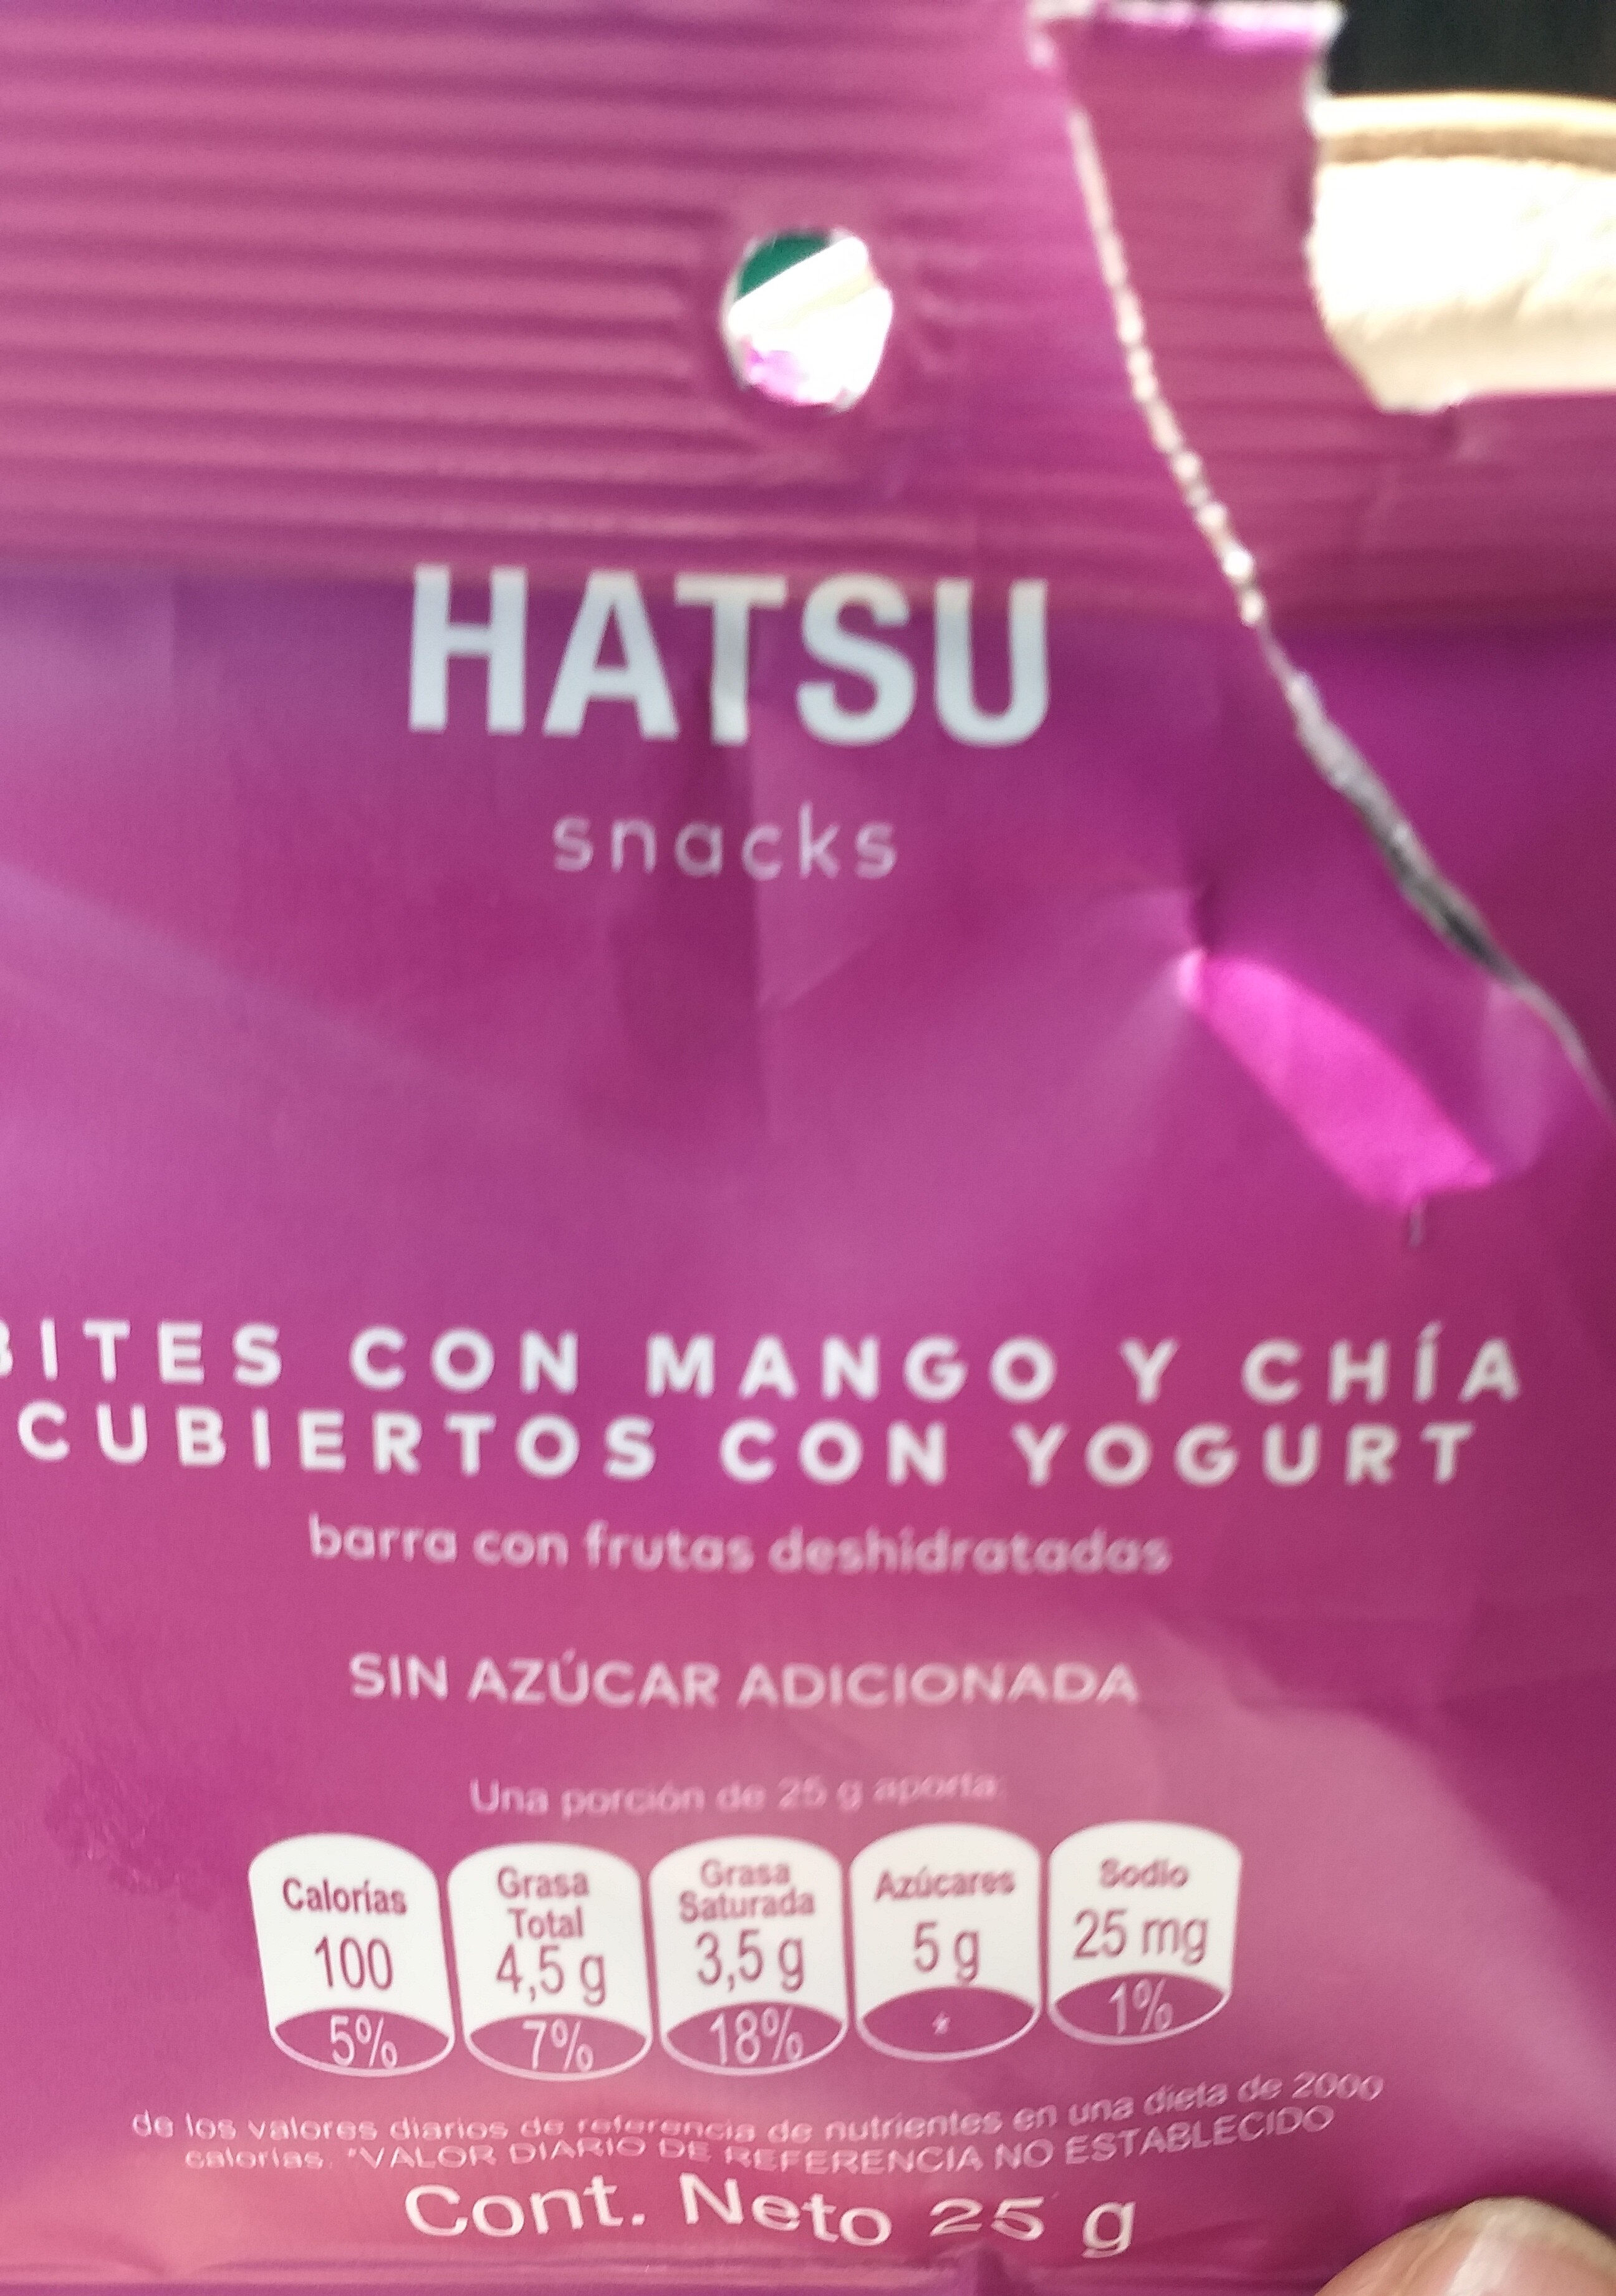 Hatsu Bites con Mango y Chia Cubiertos con Yogurt - Product - es